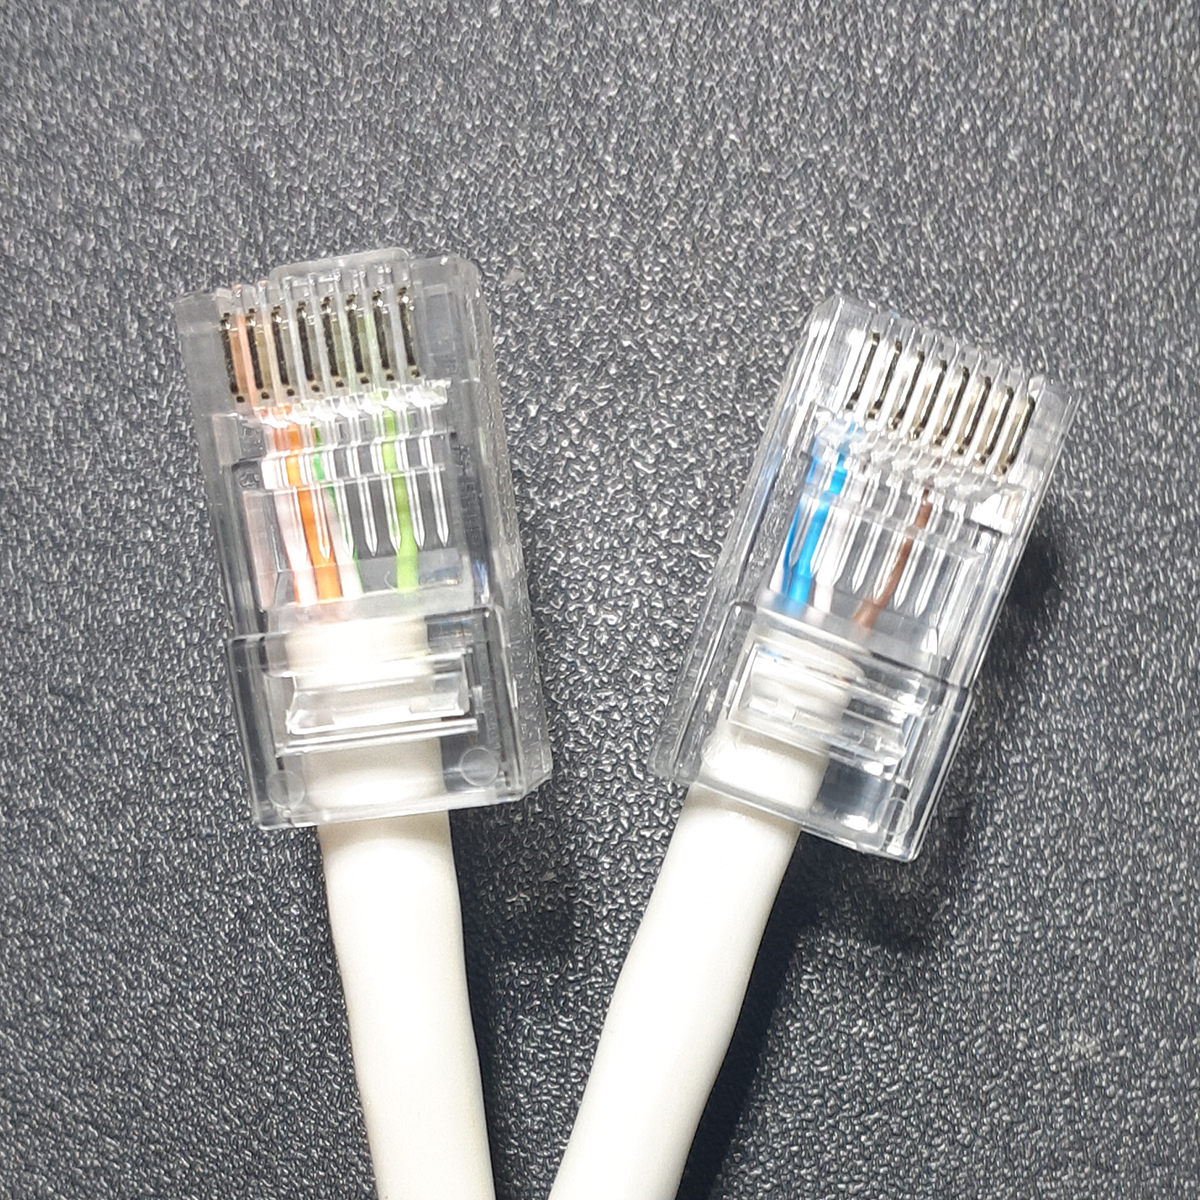 Какой всё-таки использовать Ethernet lan кабель для аудио?